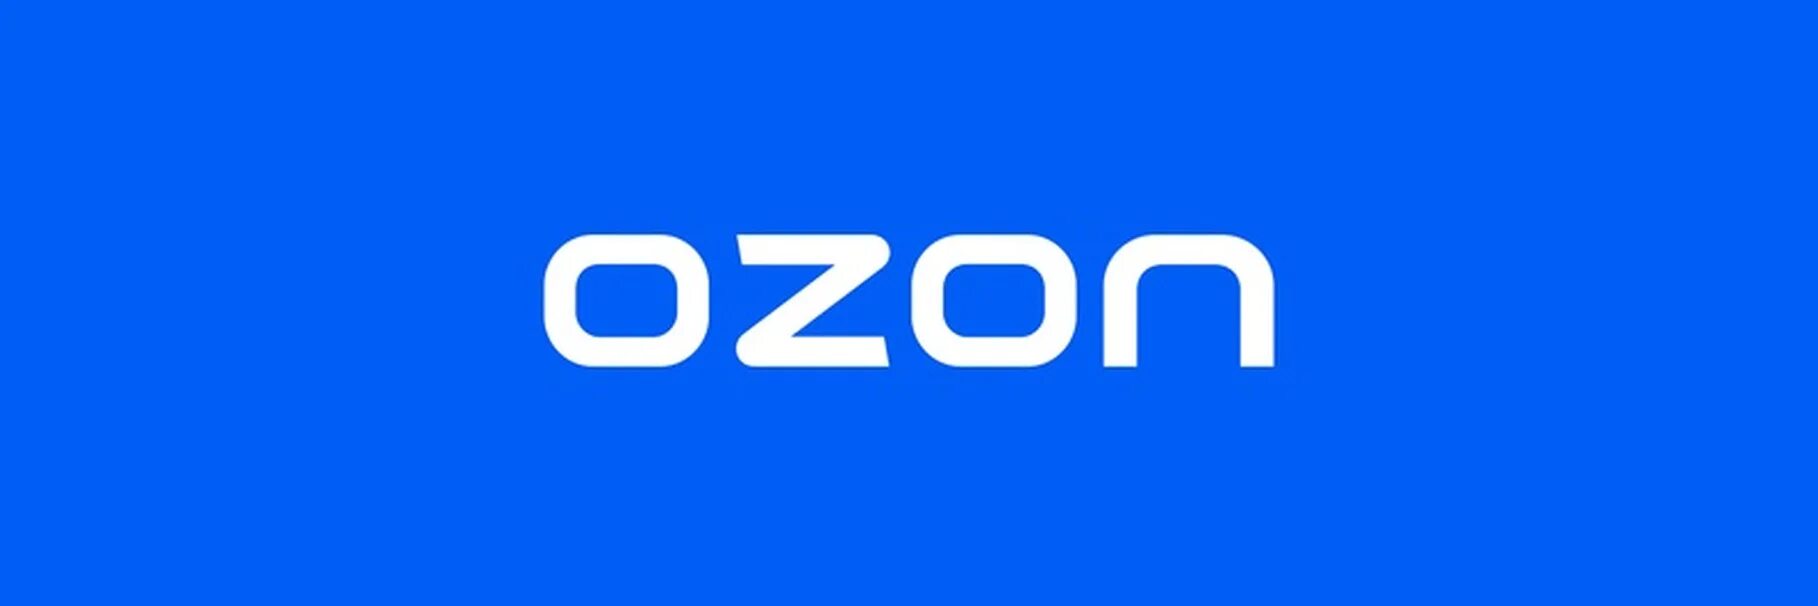 Ozon onelink. Озон логотип. Надпись Озон. Магазин Озон логотип. Логотип Озон квадратный.